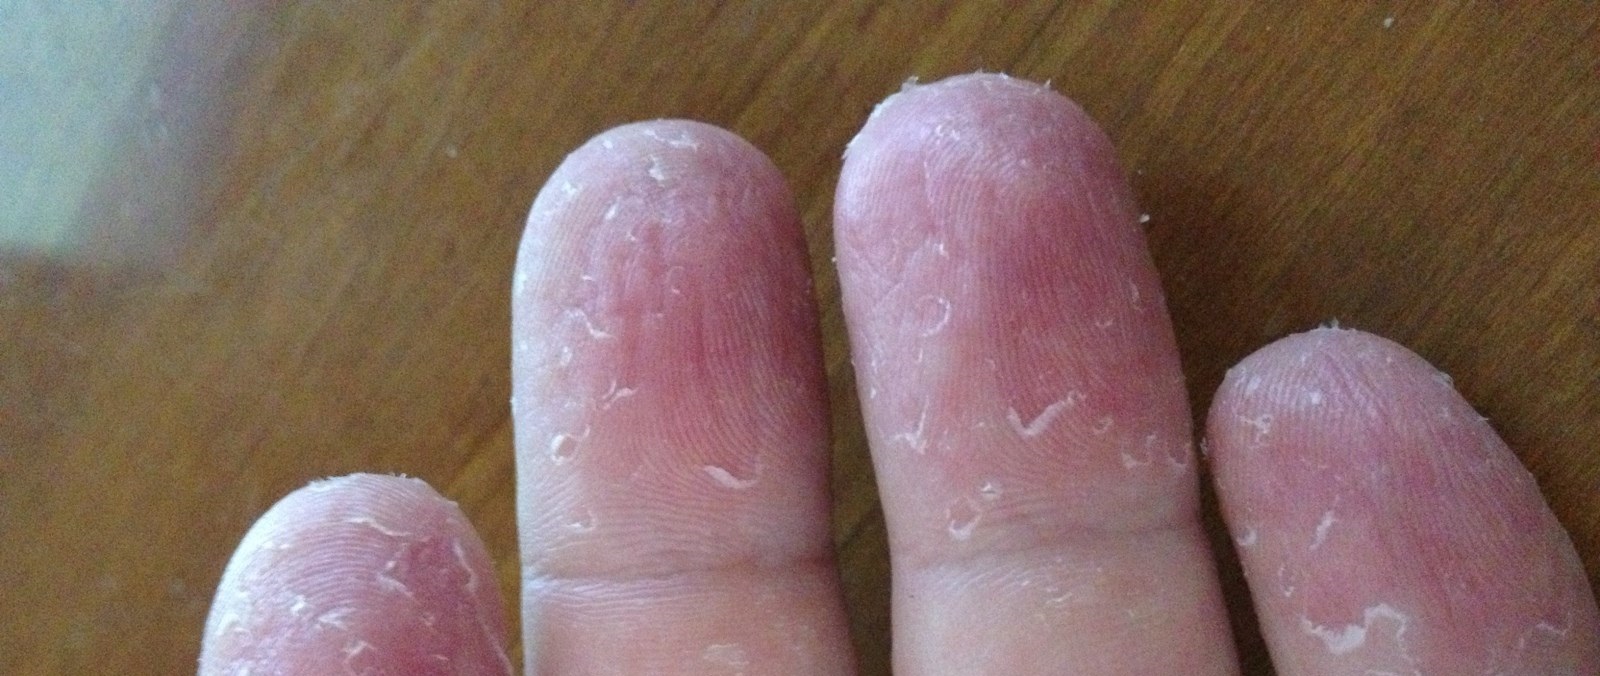 Что нужно делать если кожа на руках шелушится и облазит – советы от врачей